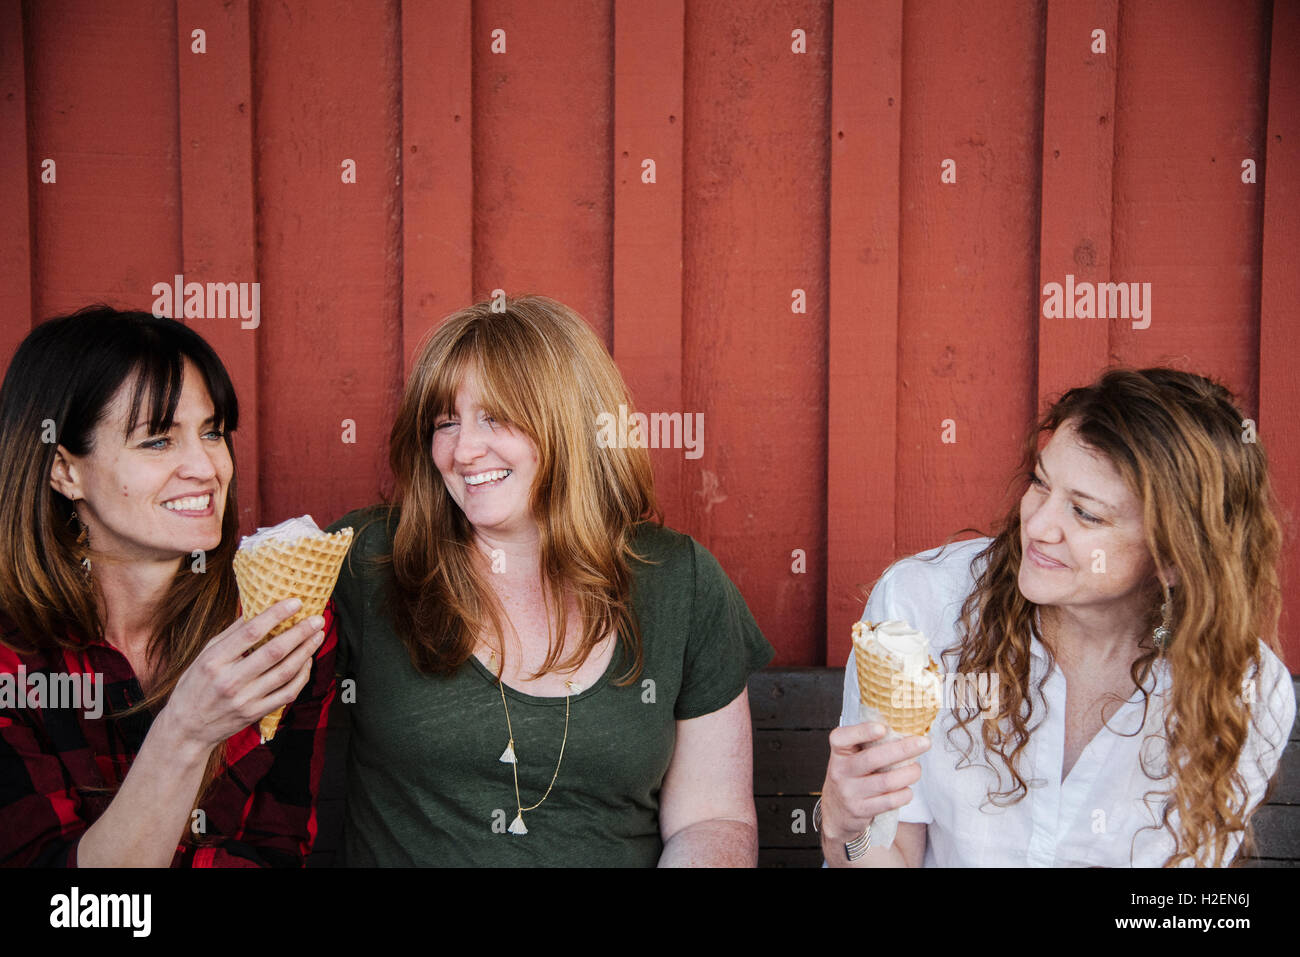 Drei Frauen Sitzen Auf Einer Bank Eis Essen Stockfotografie Alamy 4774